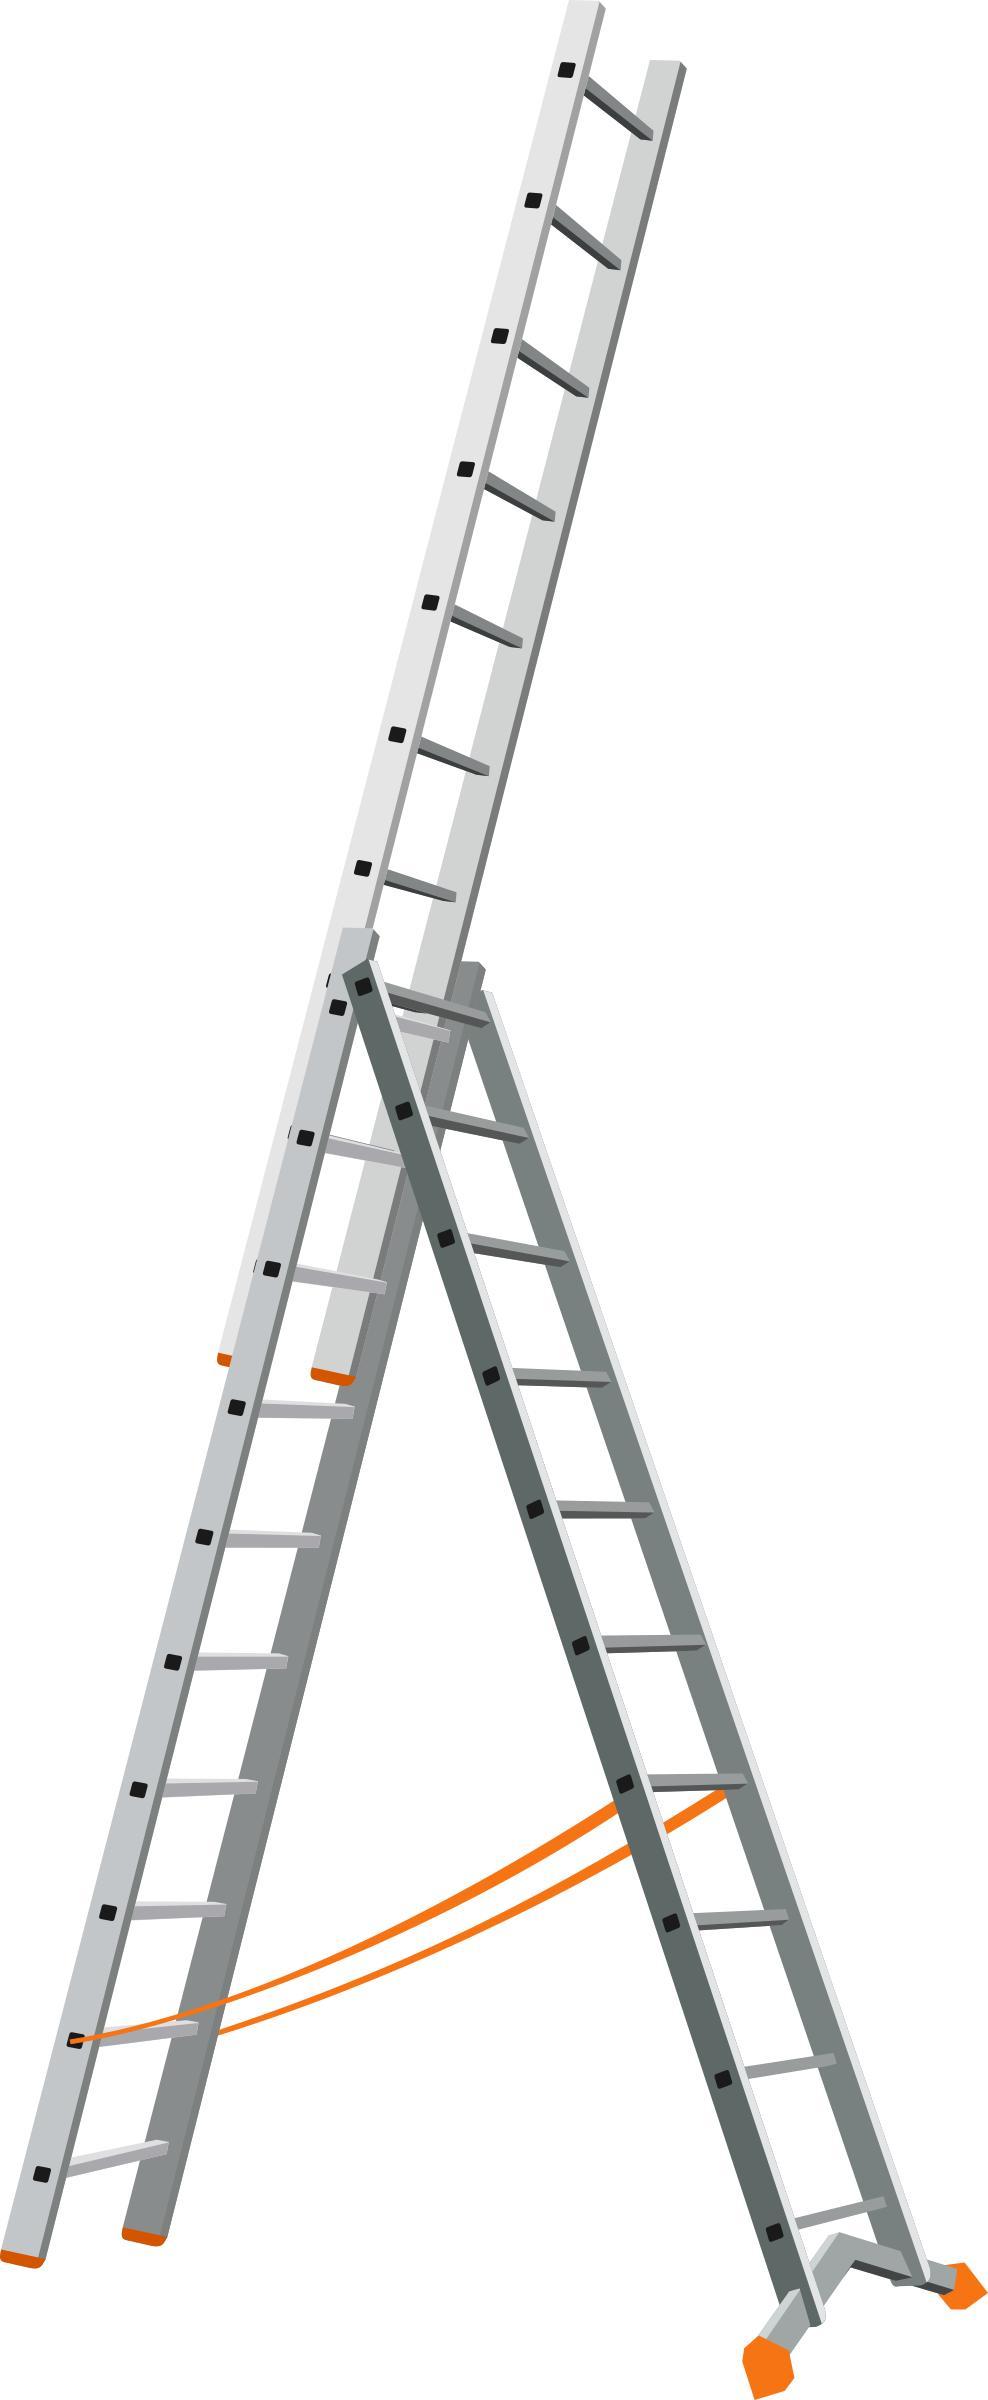 Triple Ladder png transparent